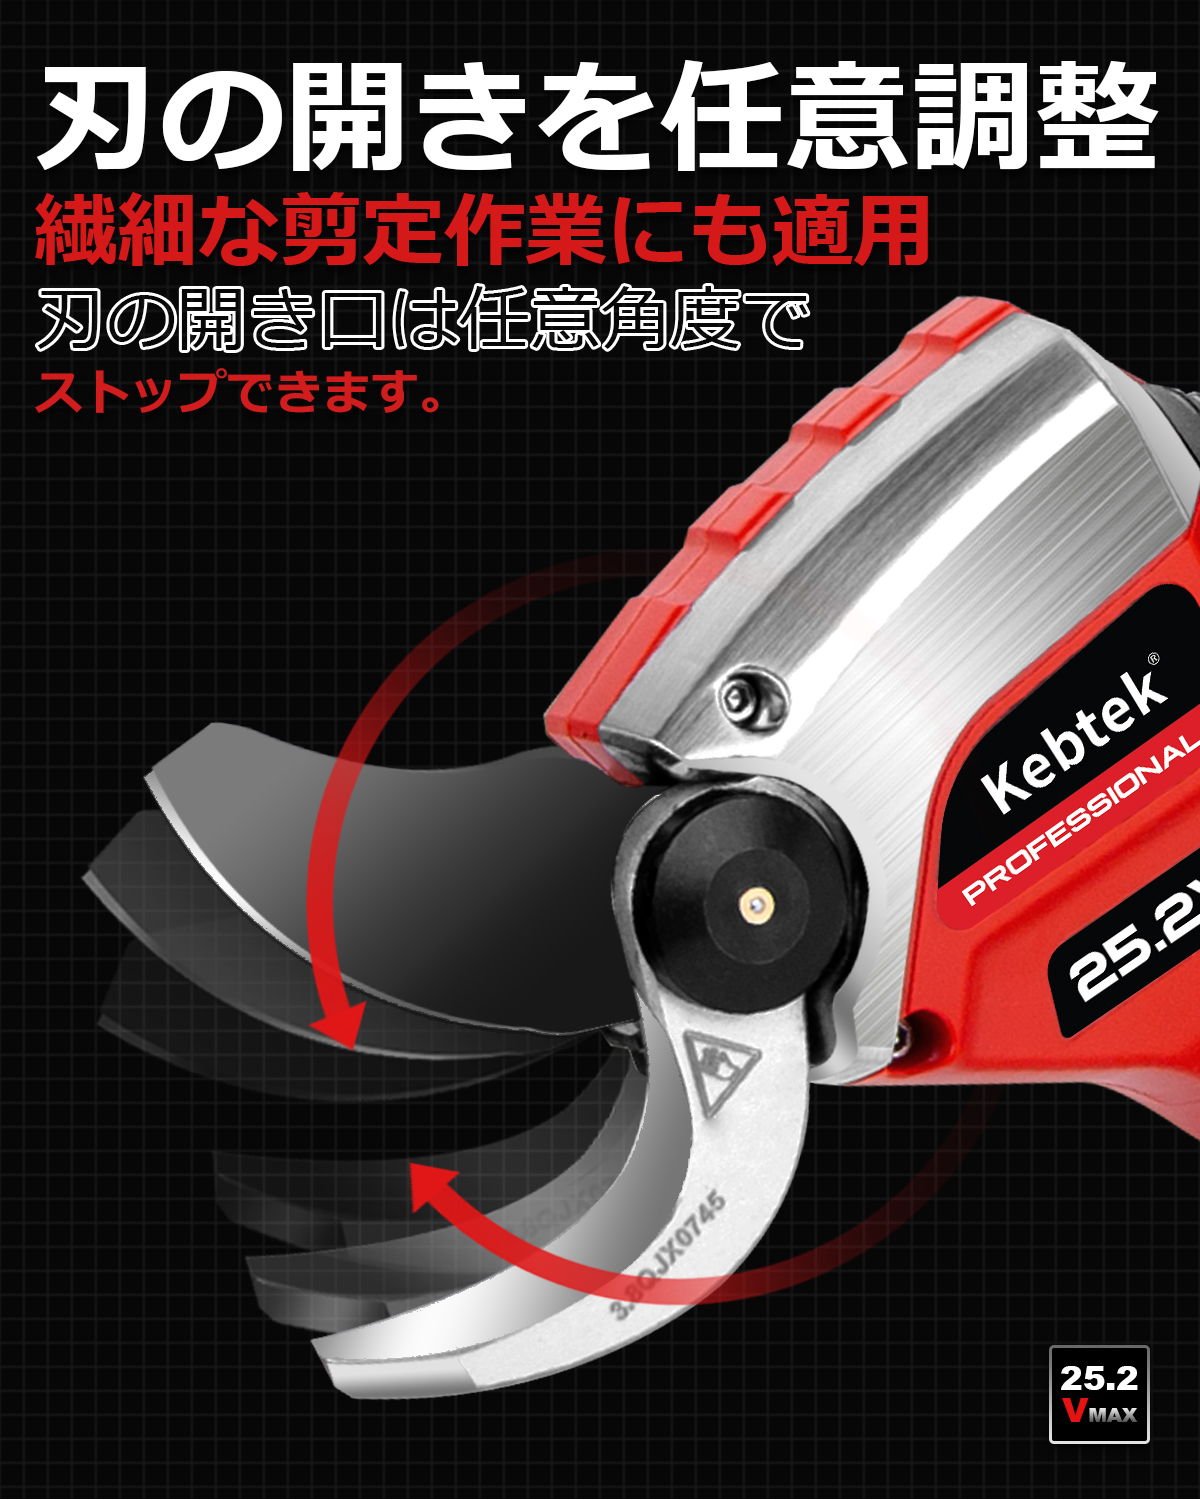 Kebtek 充電式剪定バサミ 18V コード - 4